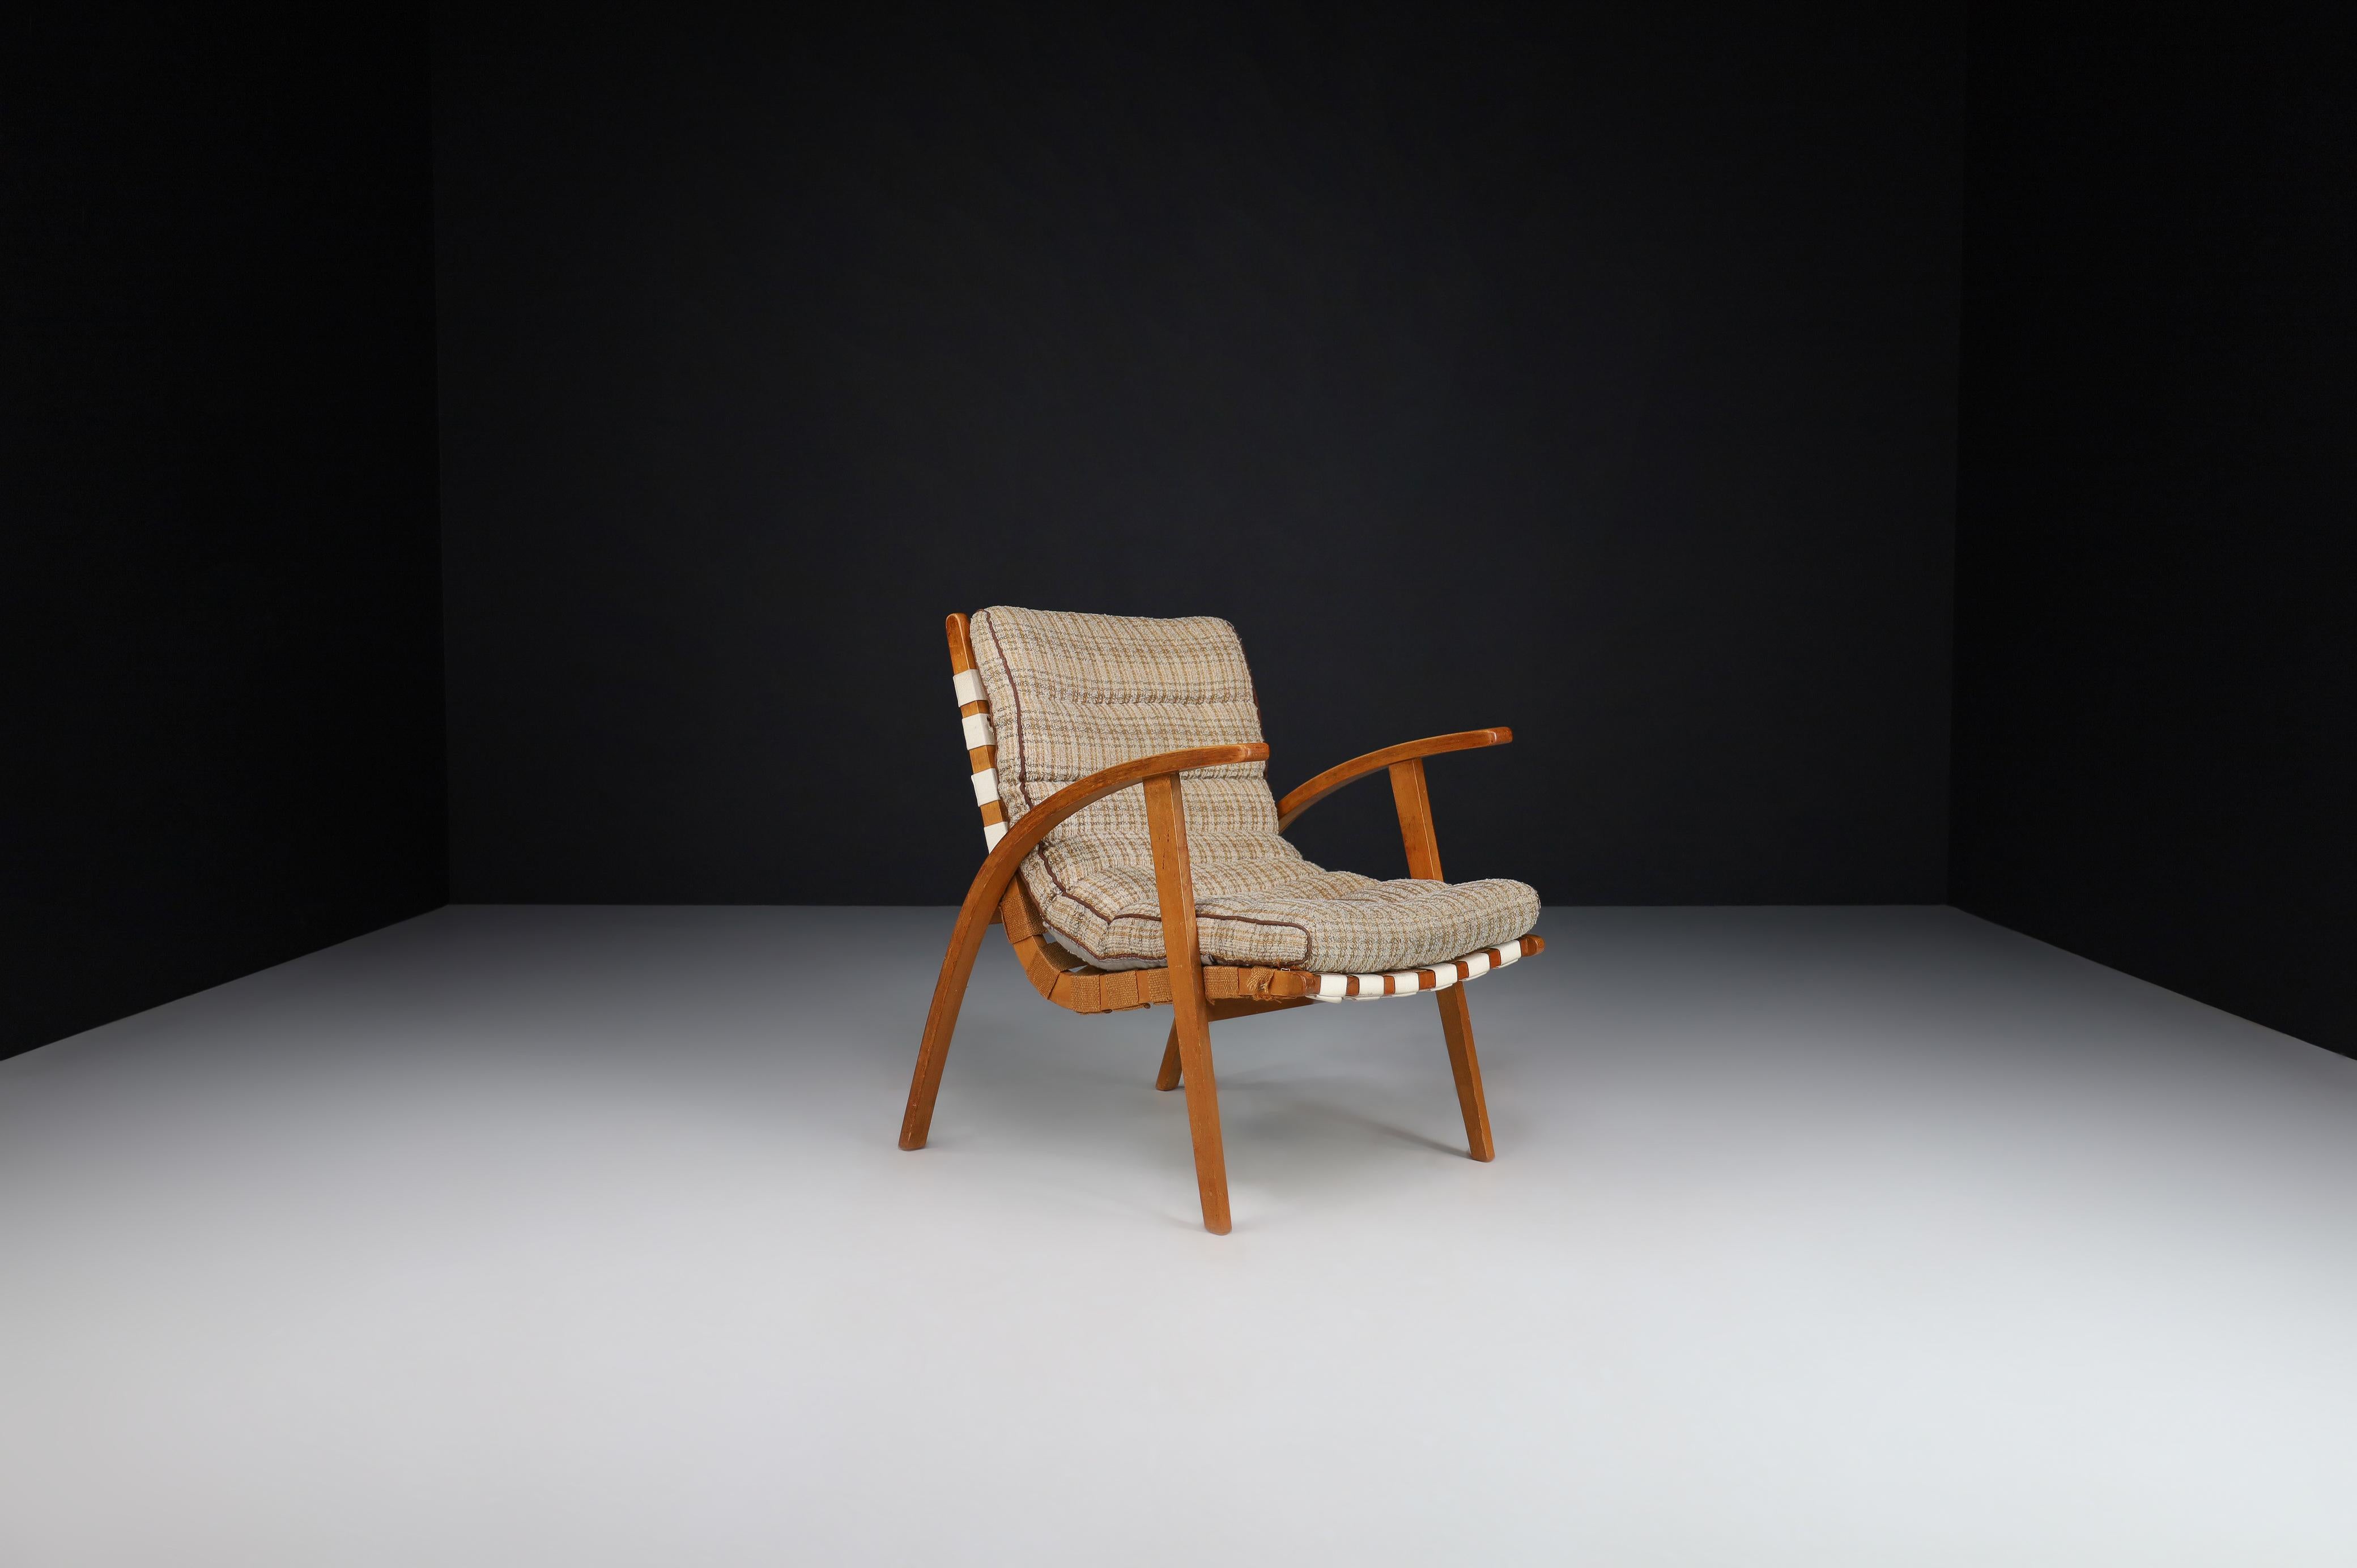 Jan Vanek Einfacher Stuhl aus Bugholz und Leinwand, Praque, die 1930er Jahre

Der tschechische Architekt Jan Vanek entwarf den Bauhaus-Sessel in den 1930er Jahren, ein Zeitgenosse von Jindrich Halabala. Dieser Stuhl ist ursprünglich mit einer